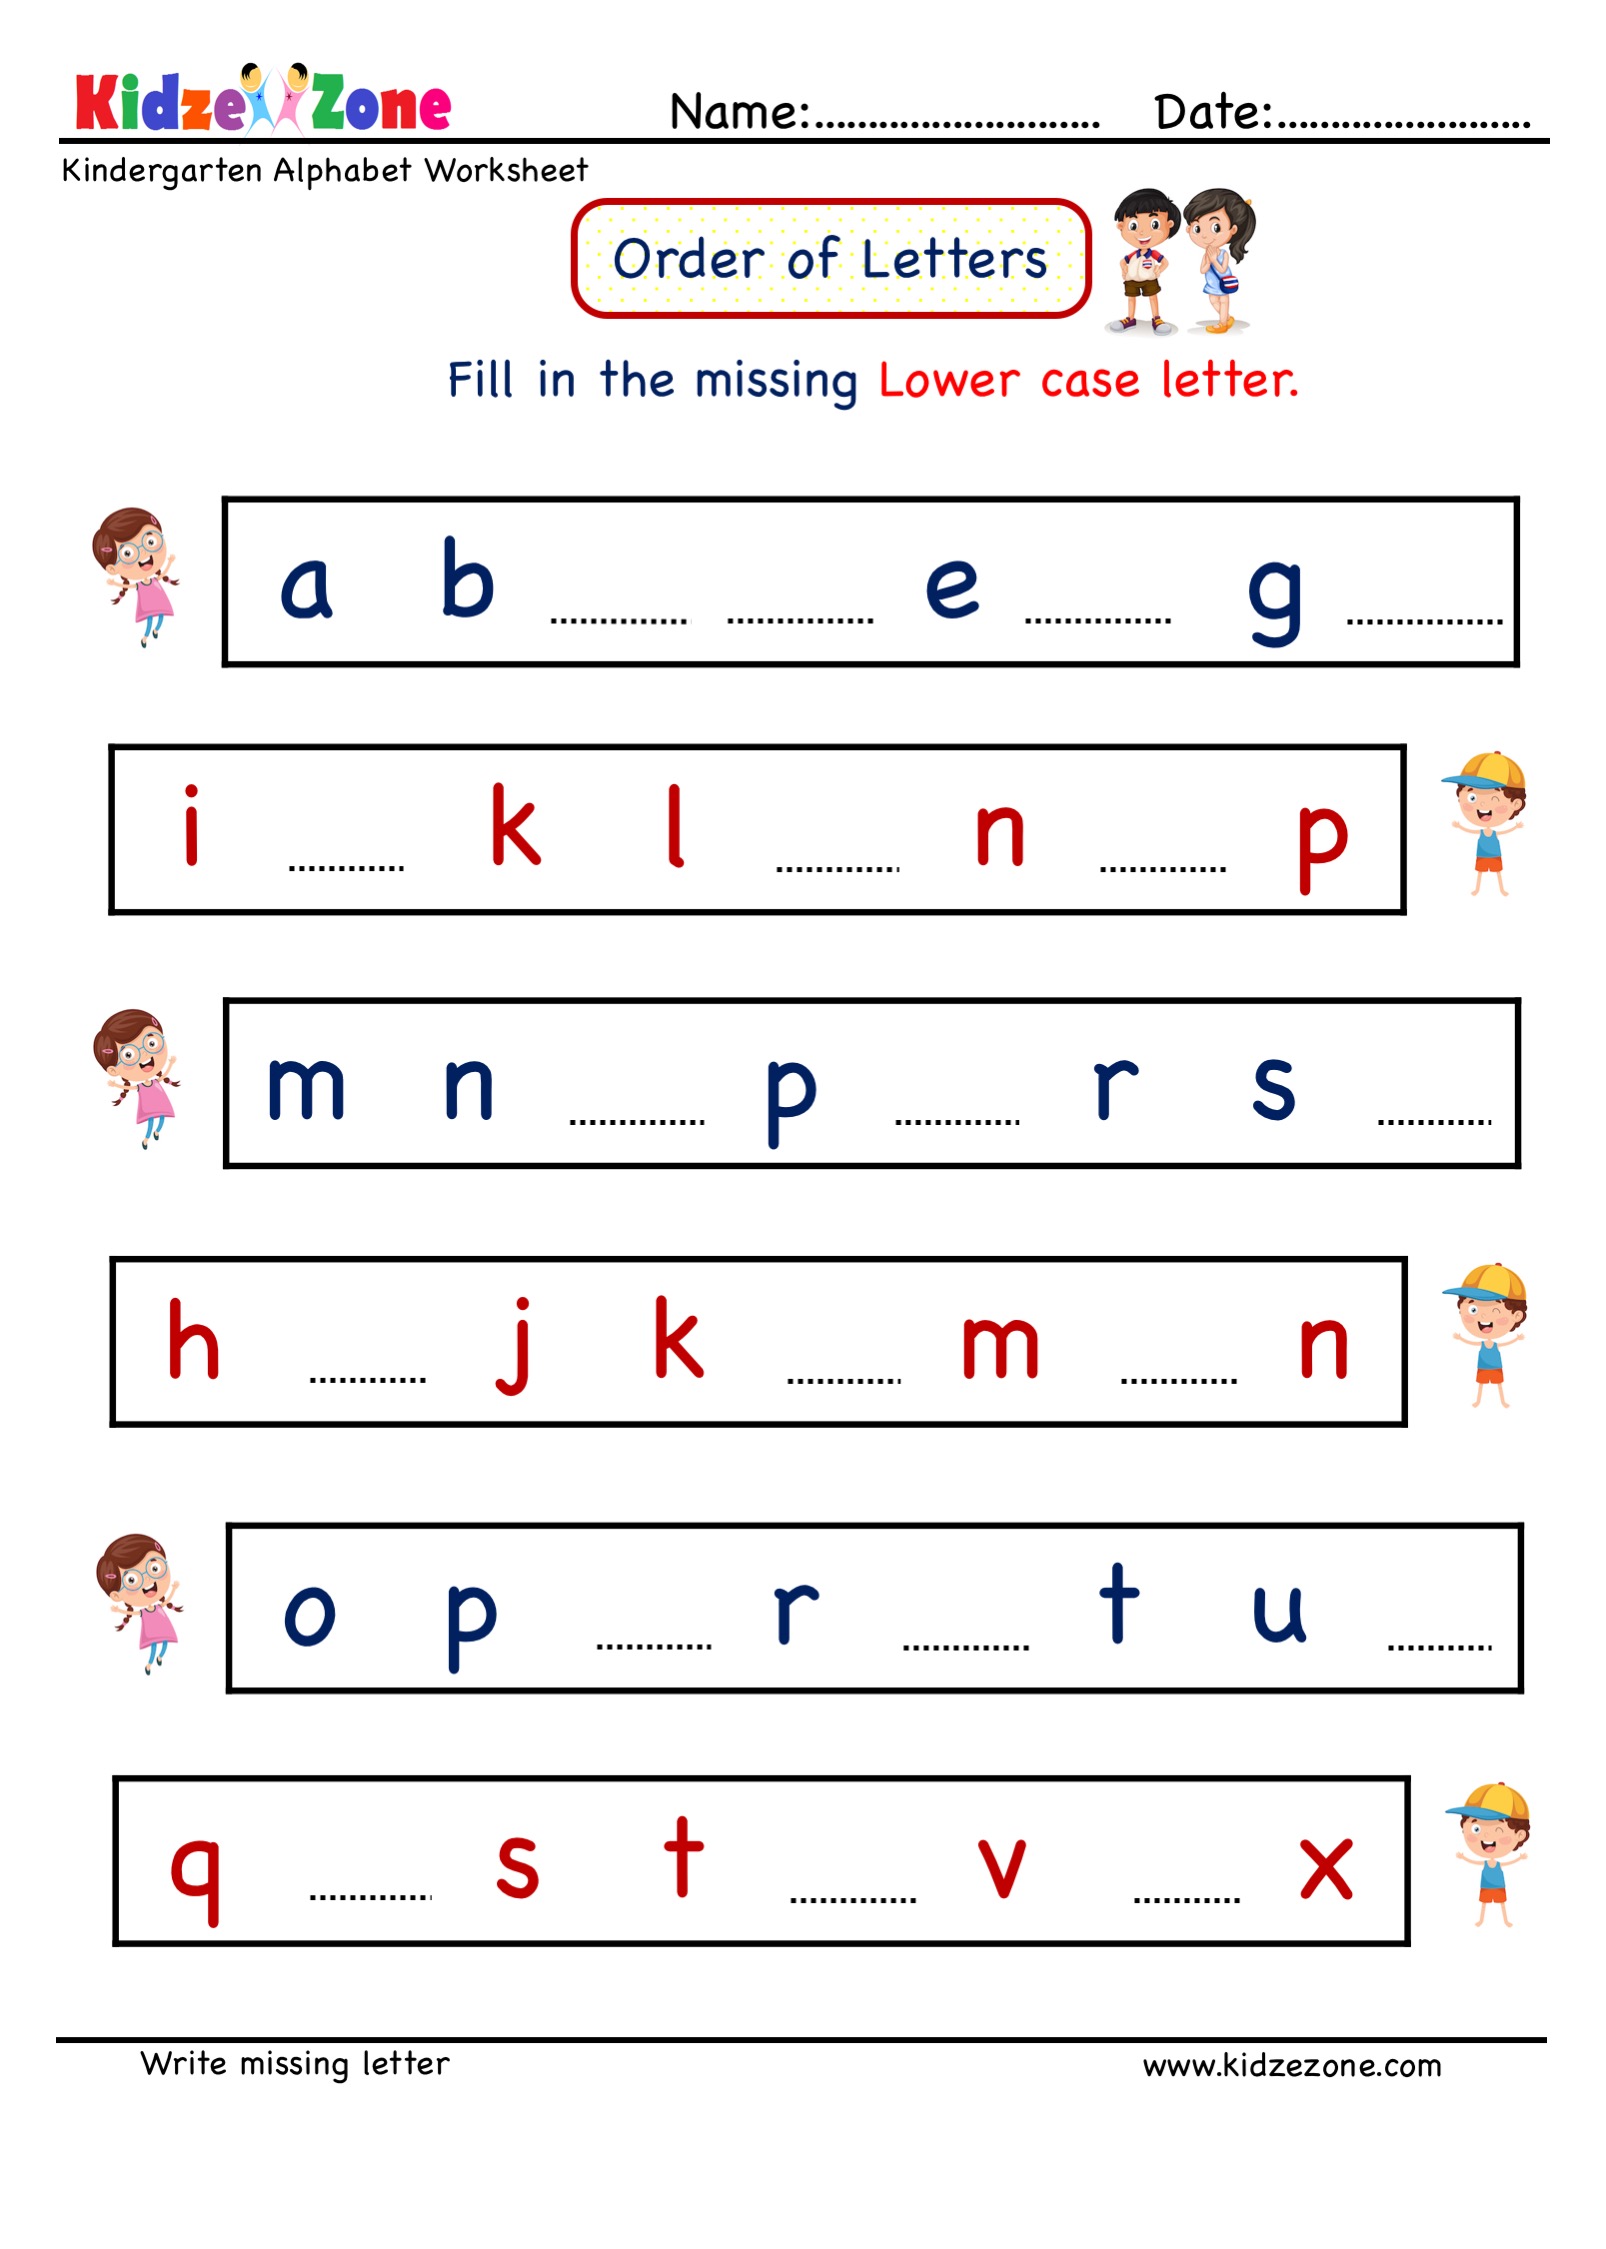 writing activities for kindergarten students